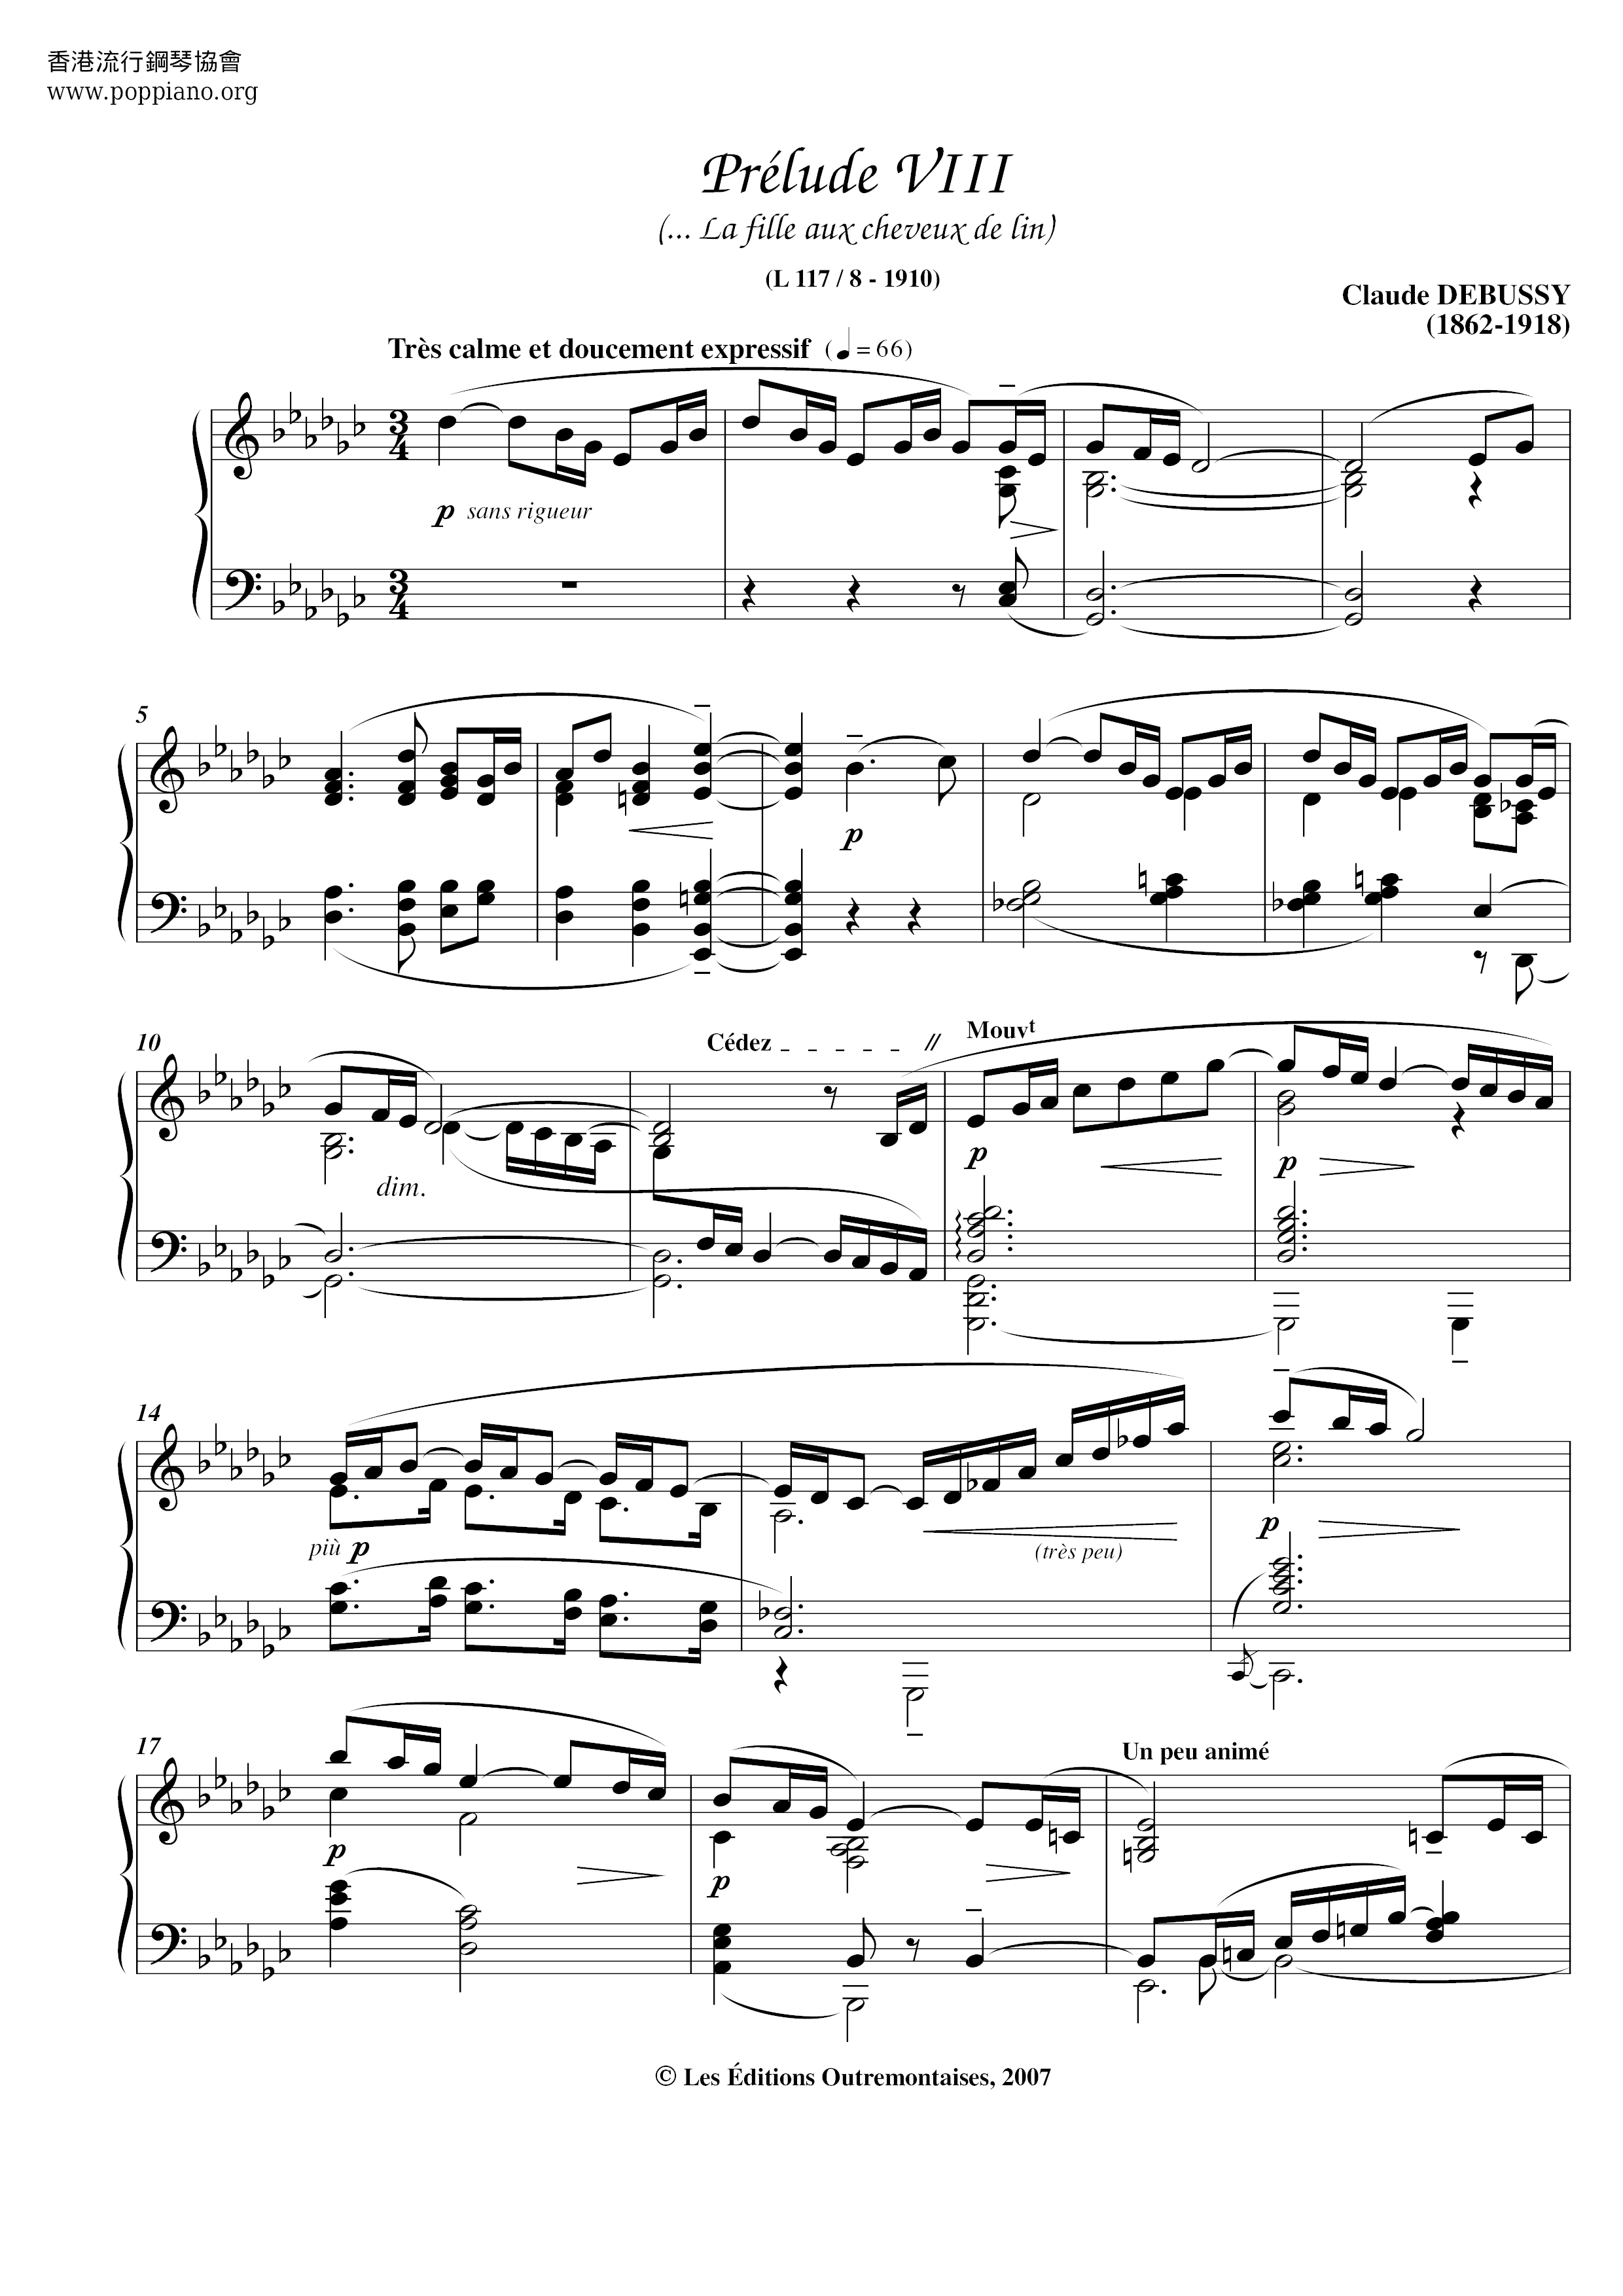 Prelude VIII Score